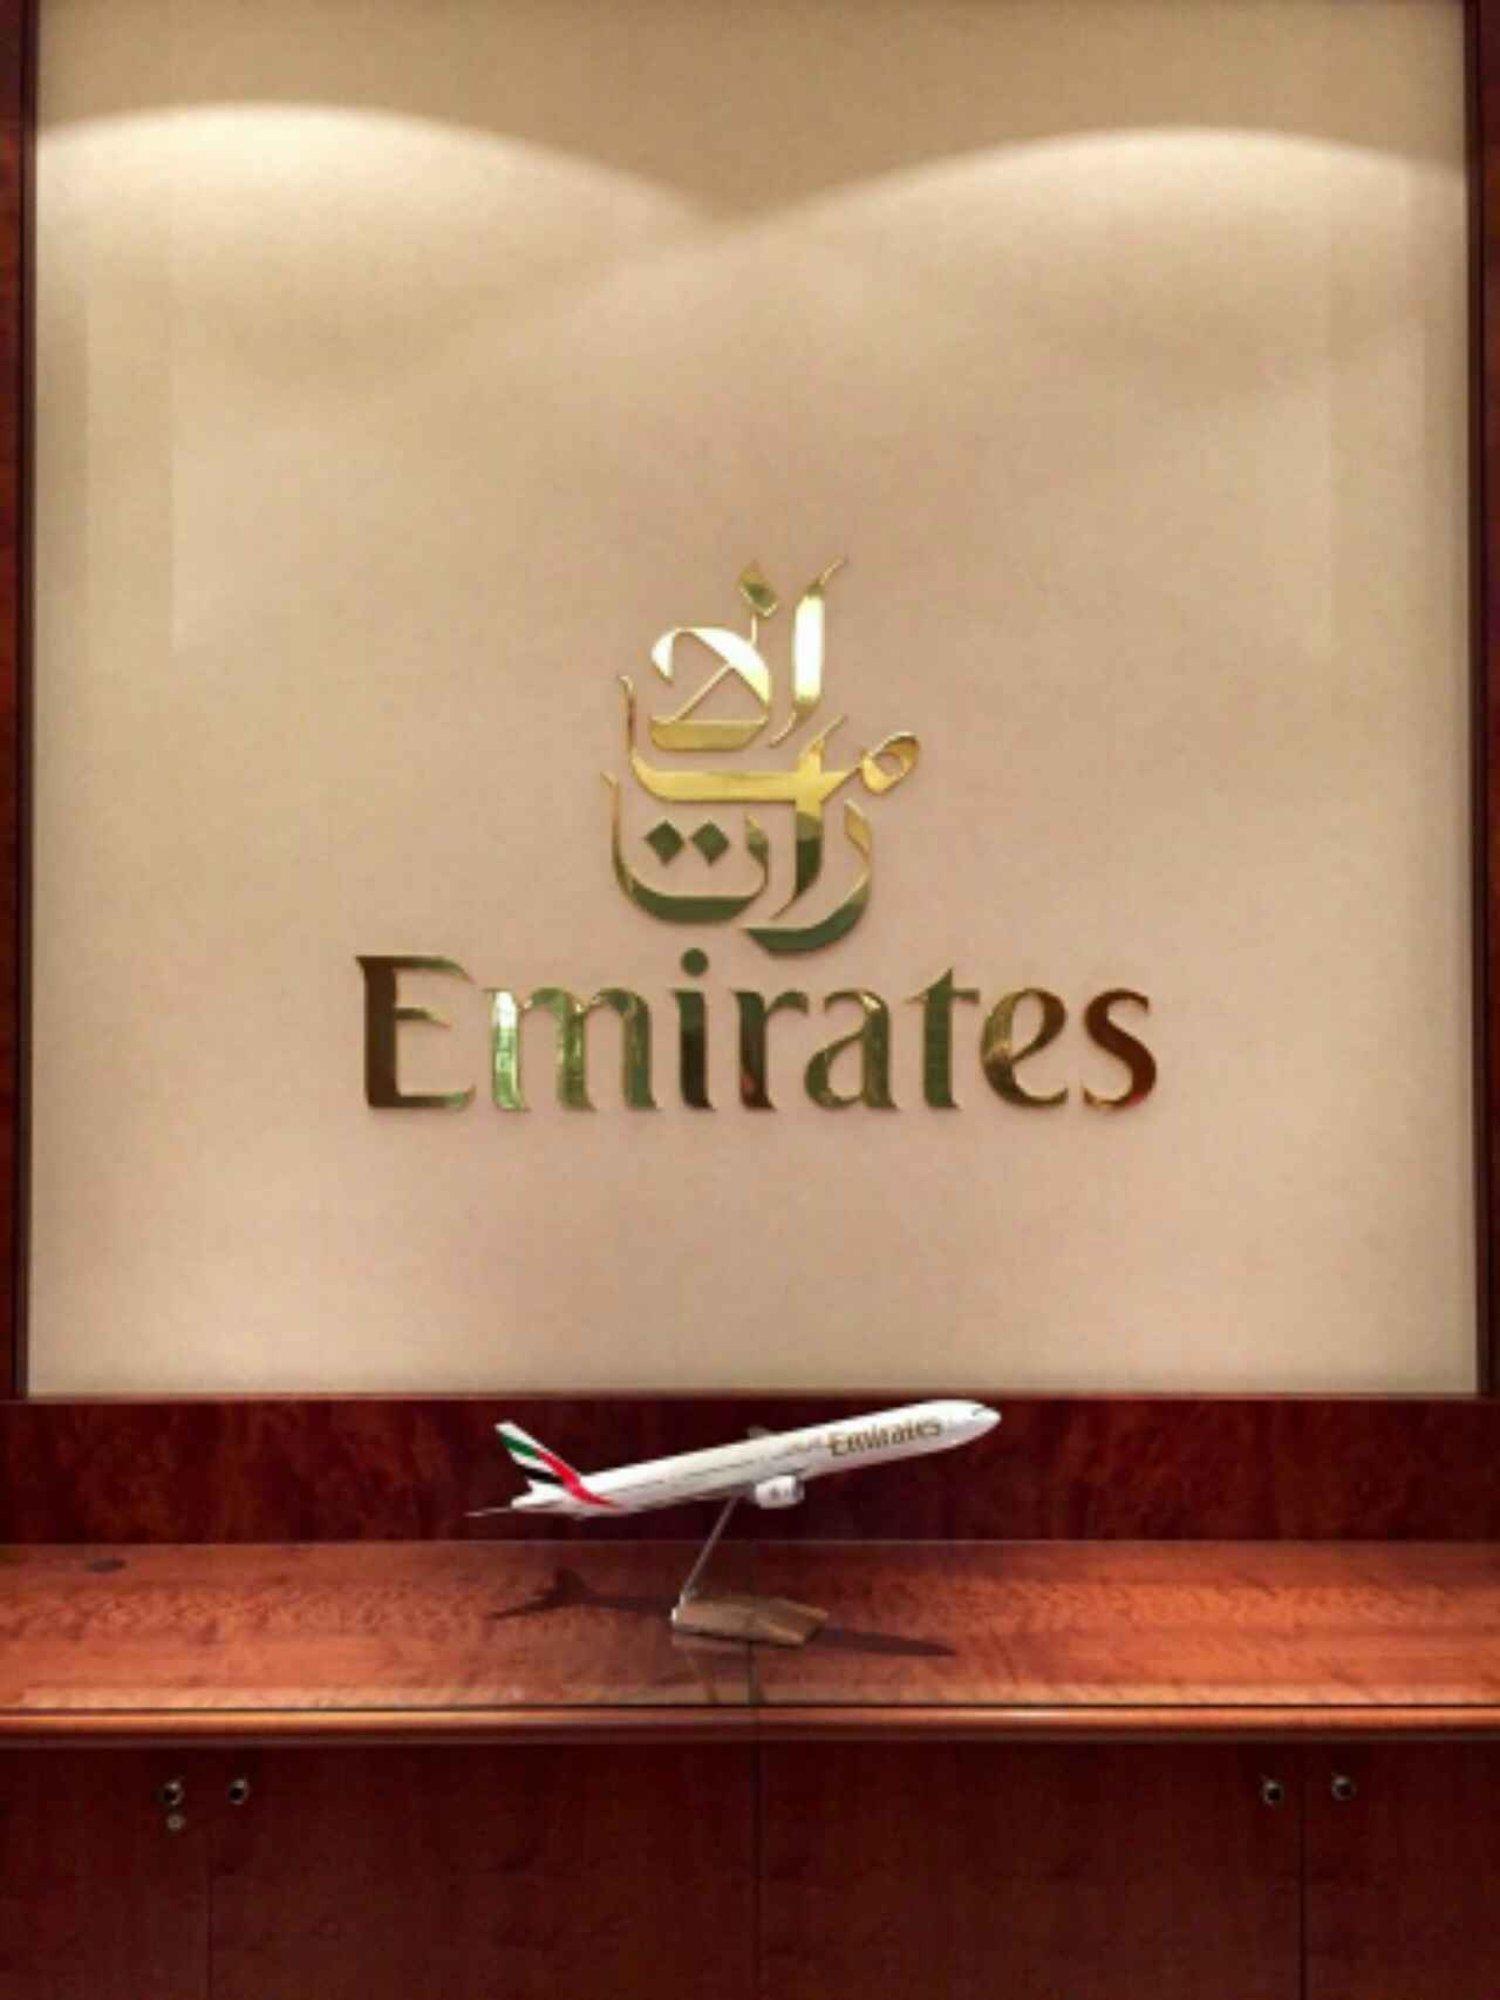 The Emirates Lounge image 1 of 8